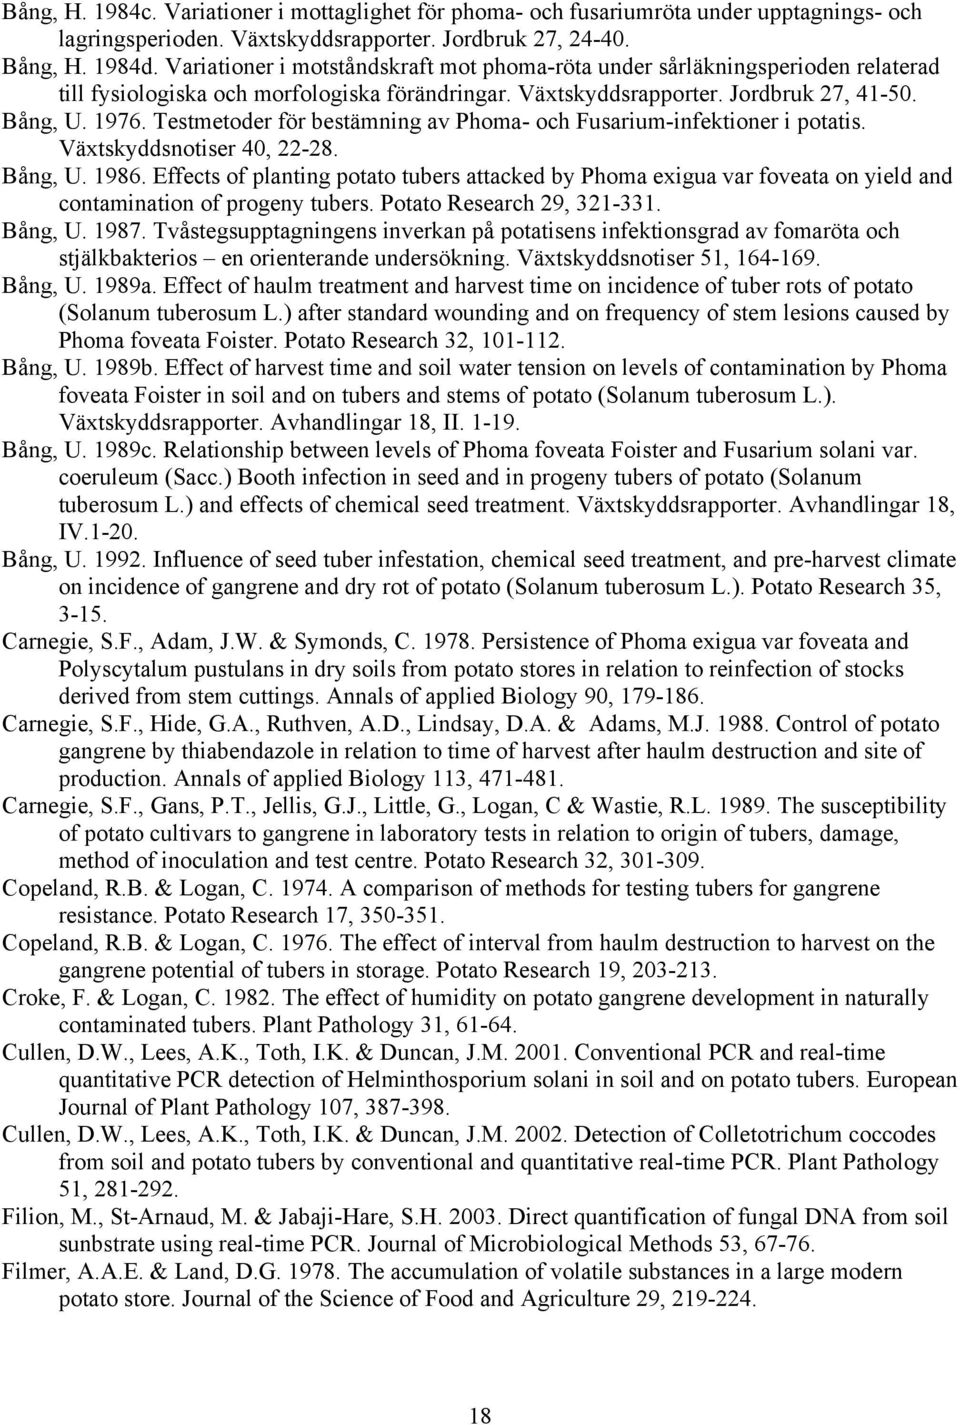 Testmetoder för bestämning av Phoma- och Fusarium-infektioner i potatis. Växtskyddsnotiser 40, 22-28. Bång, U. 1986.